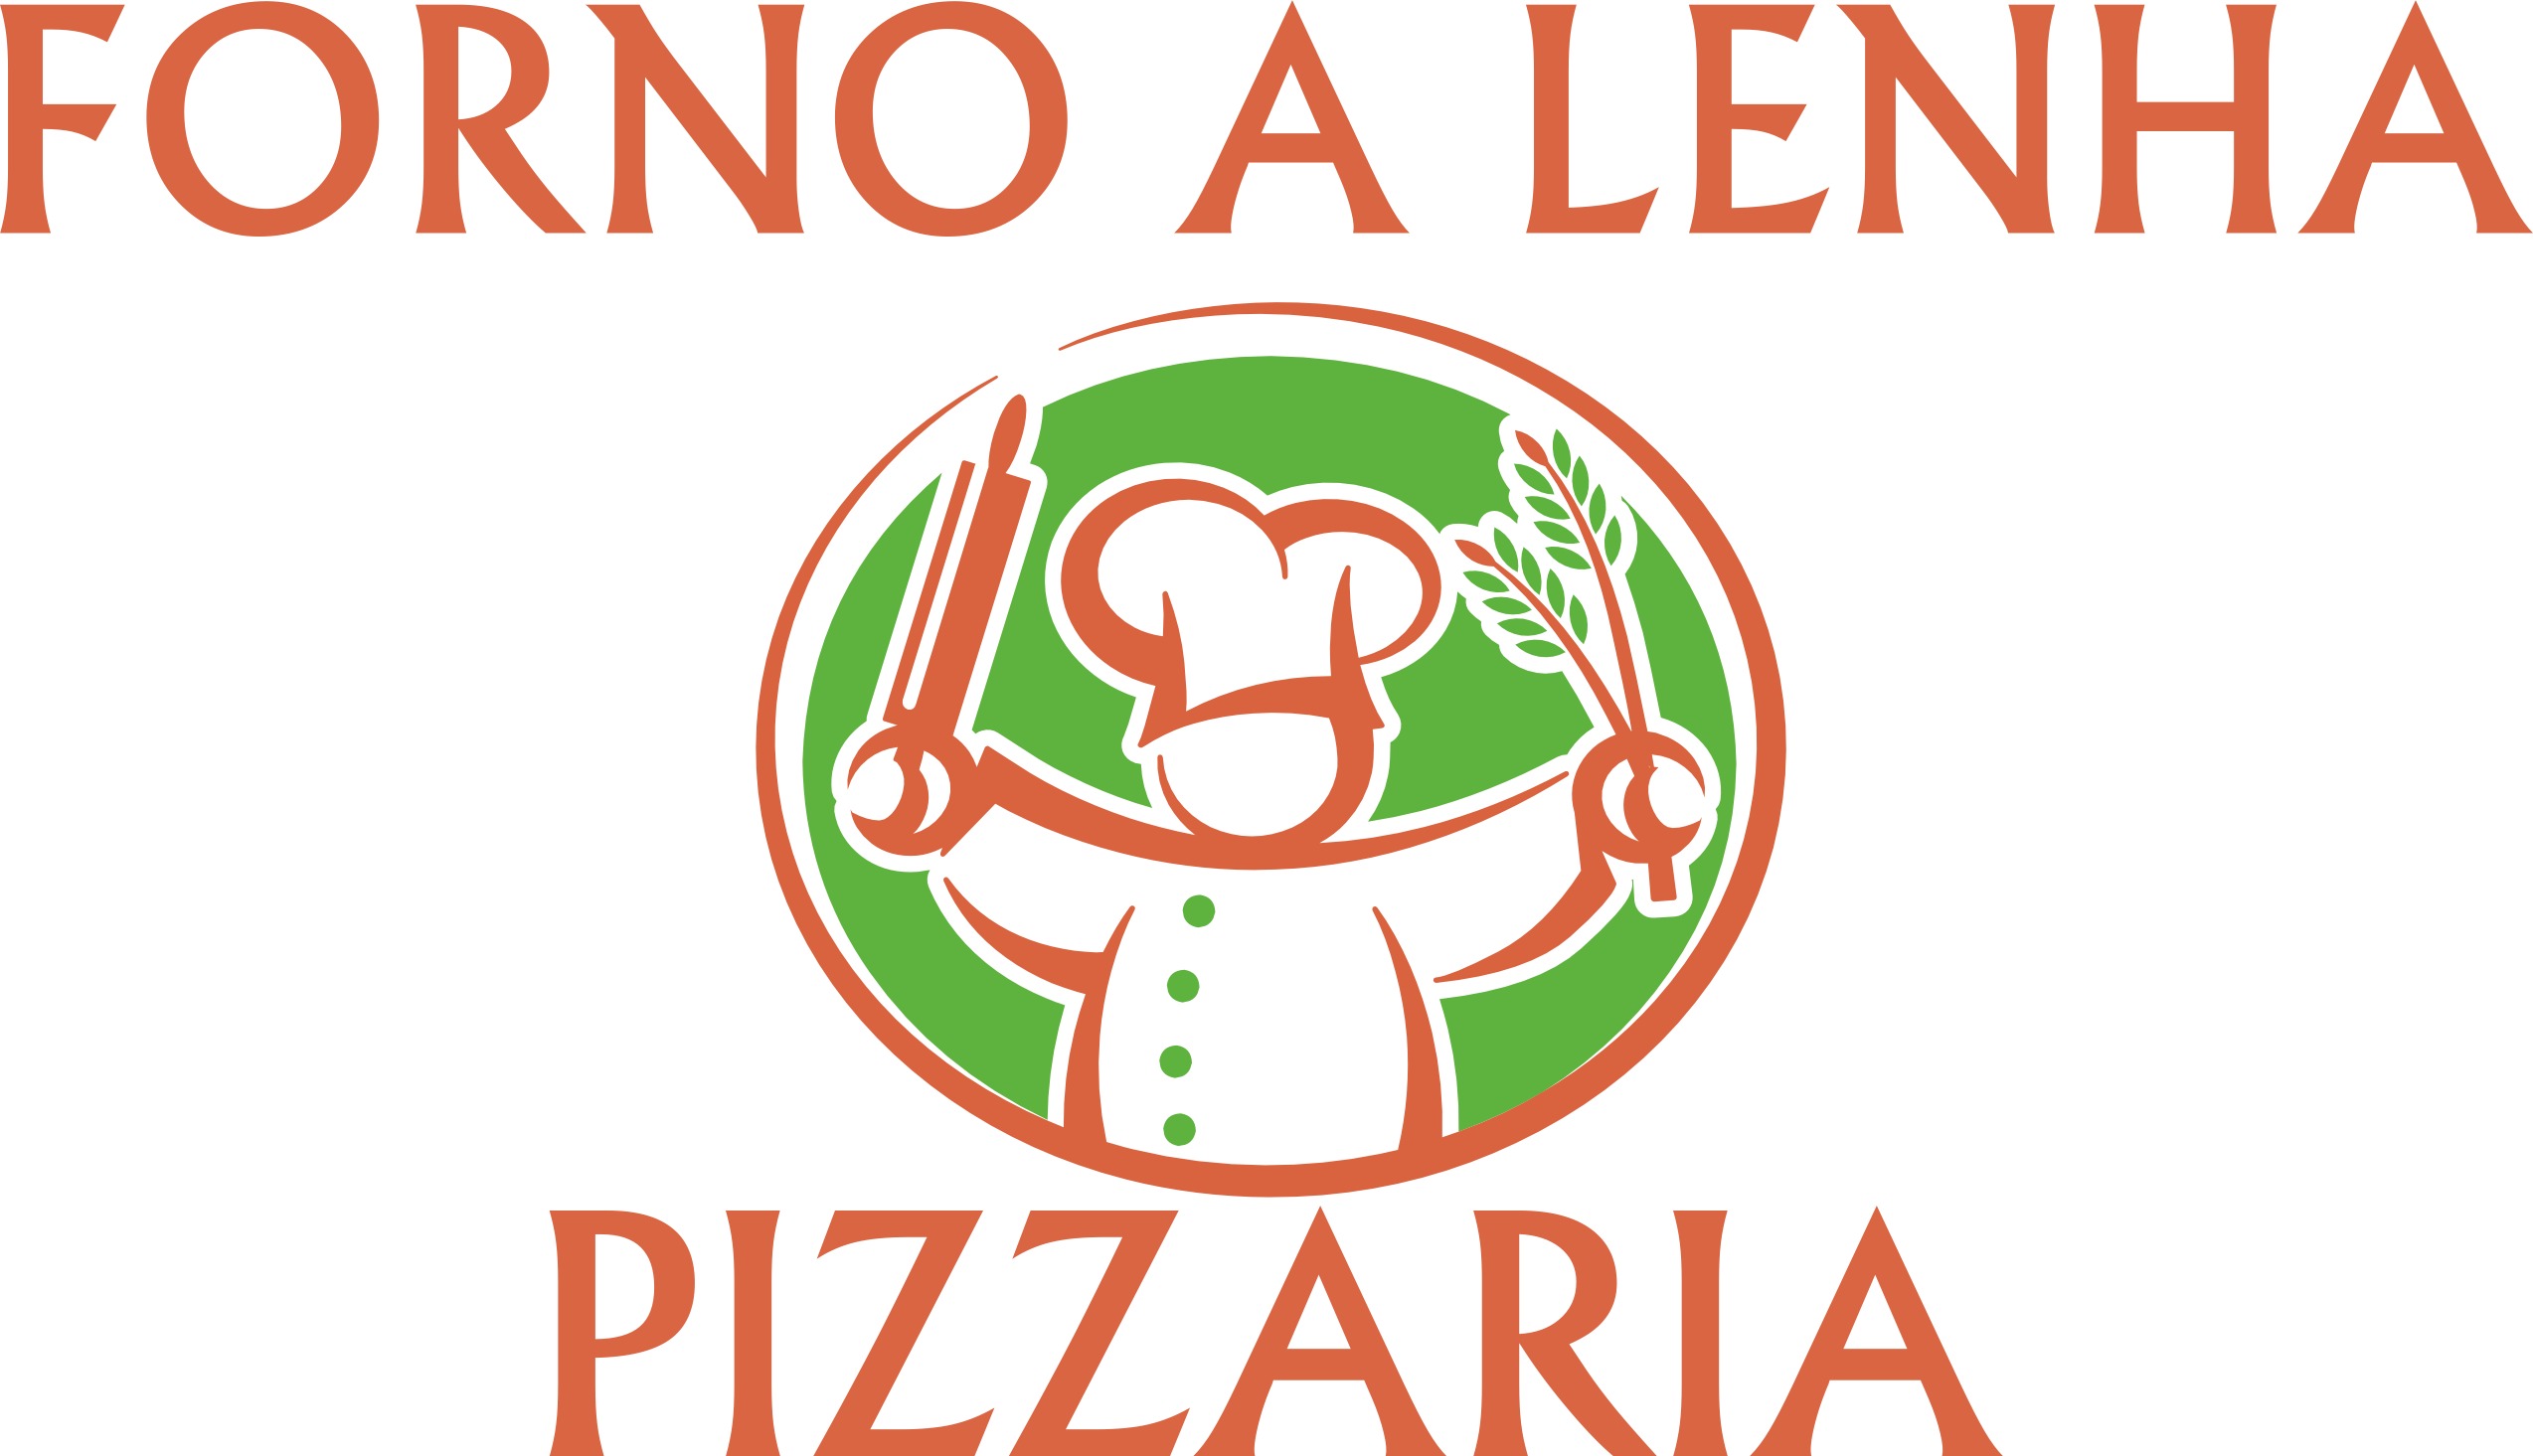 Forno a Lenha Pizzaria